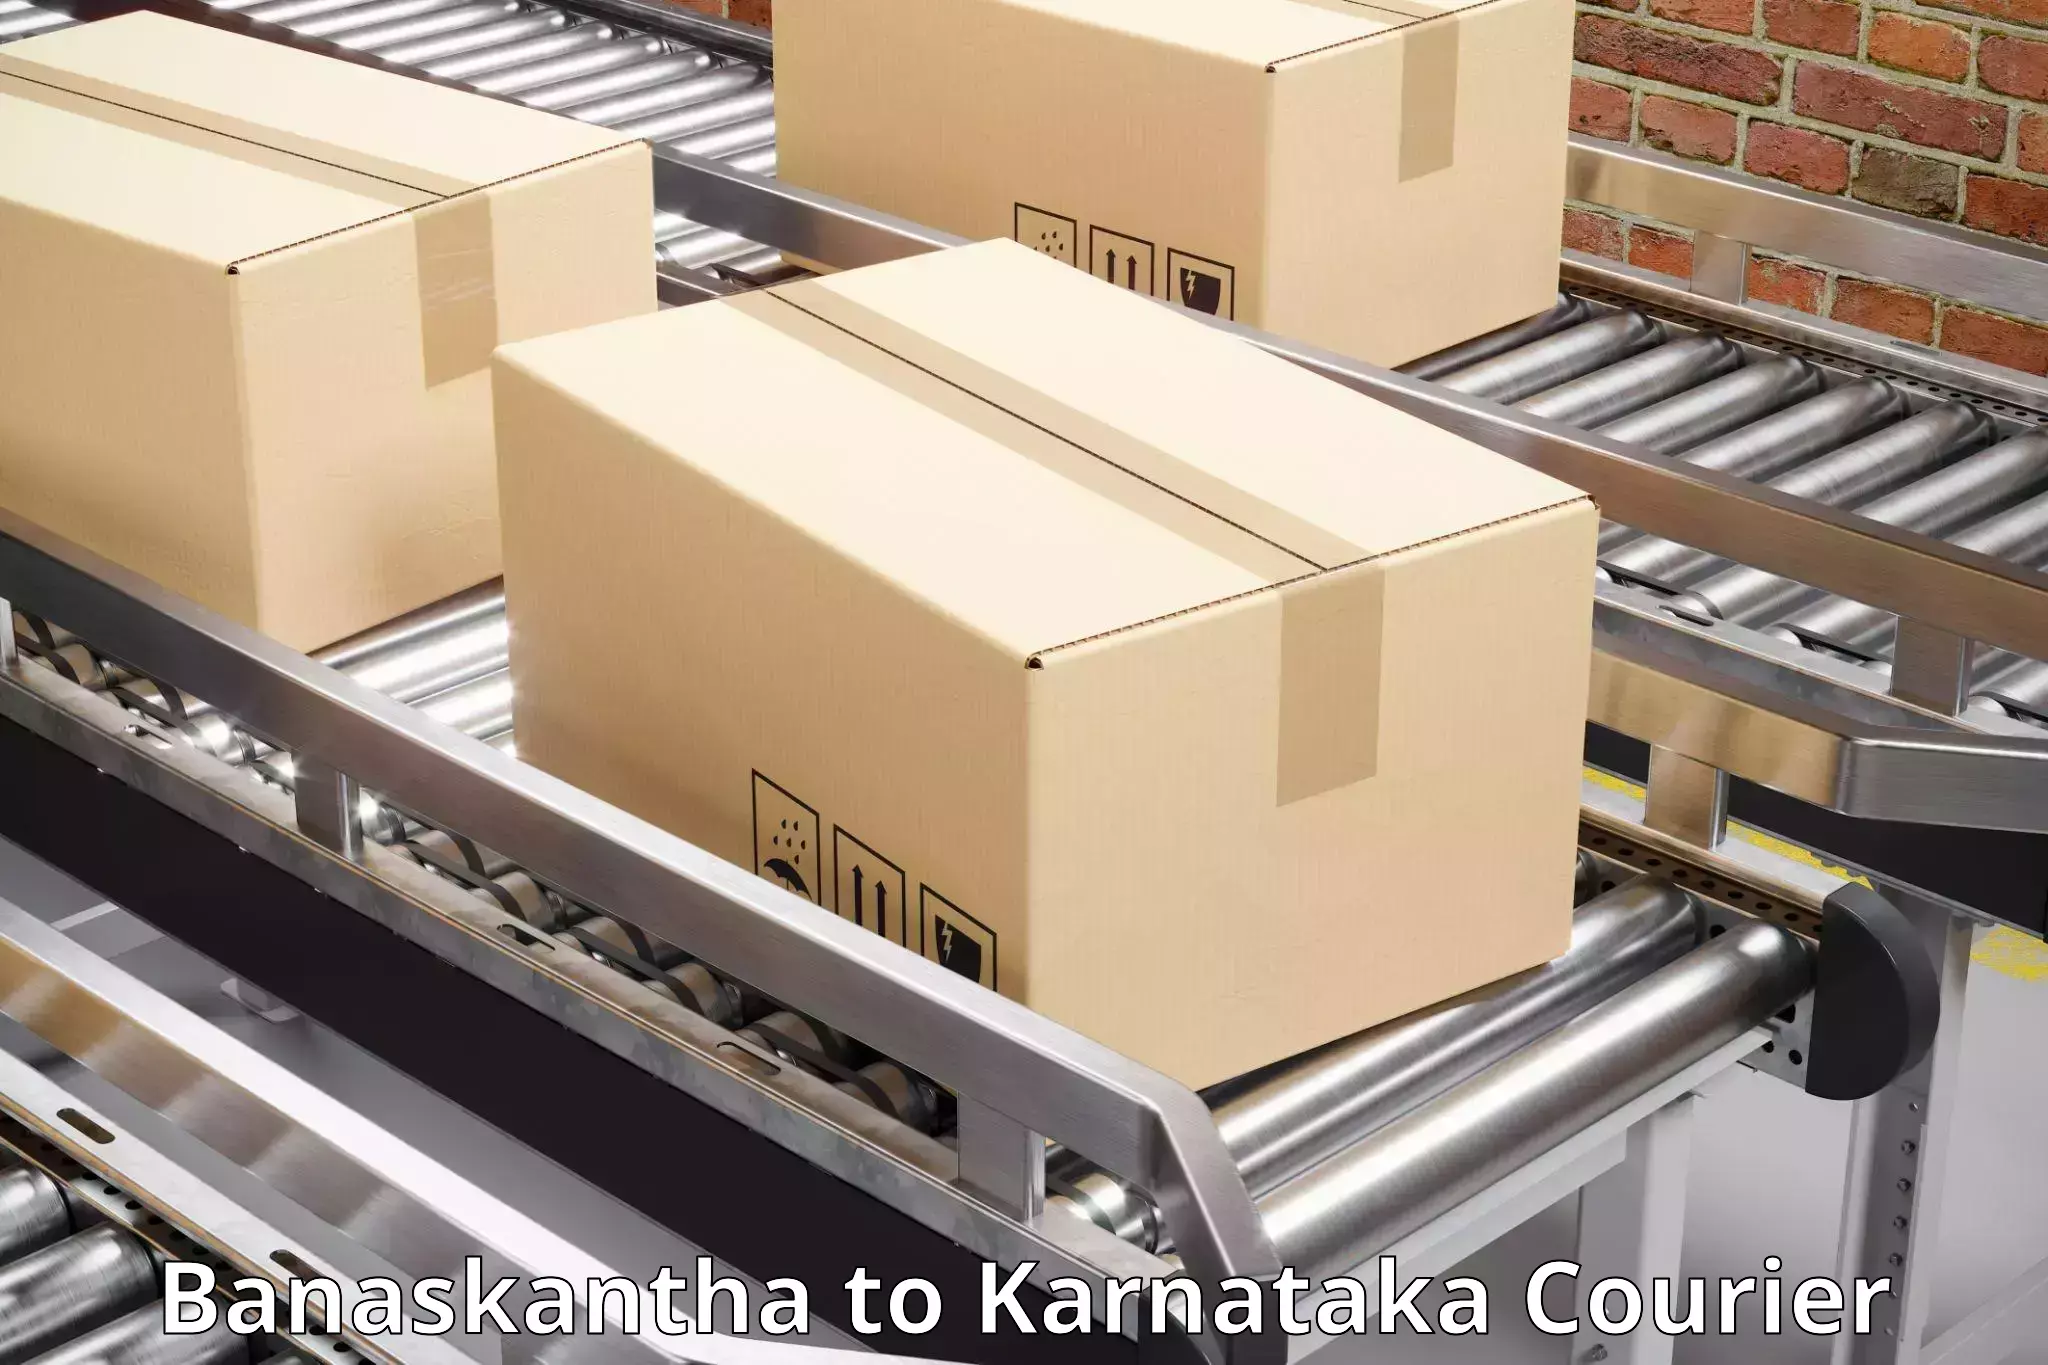 Shipping and handling Banaskantha to Karnataka